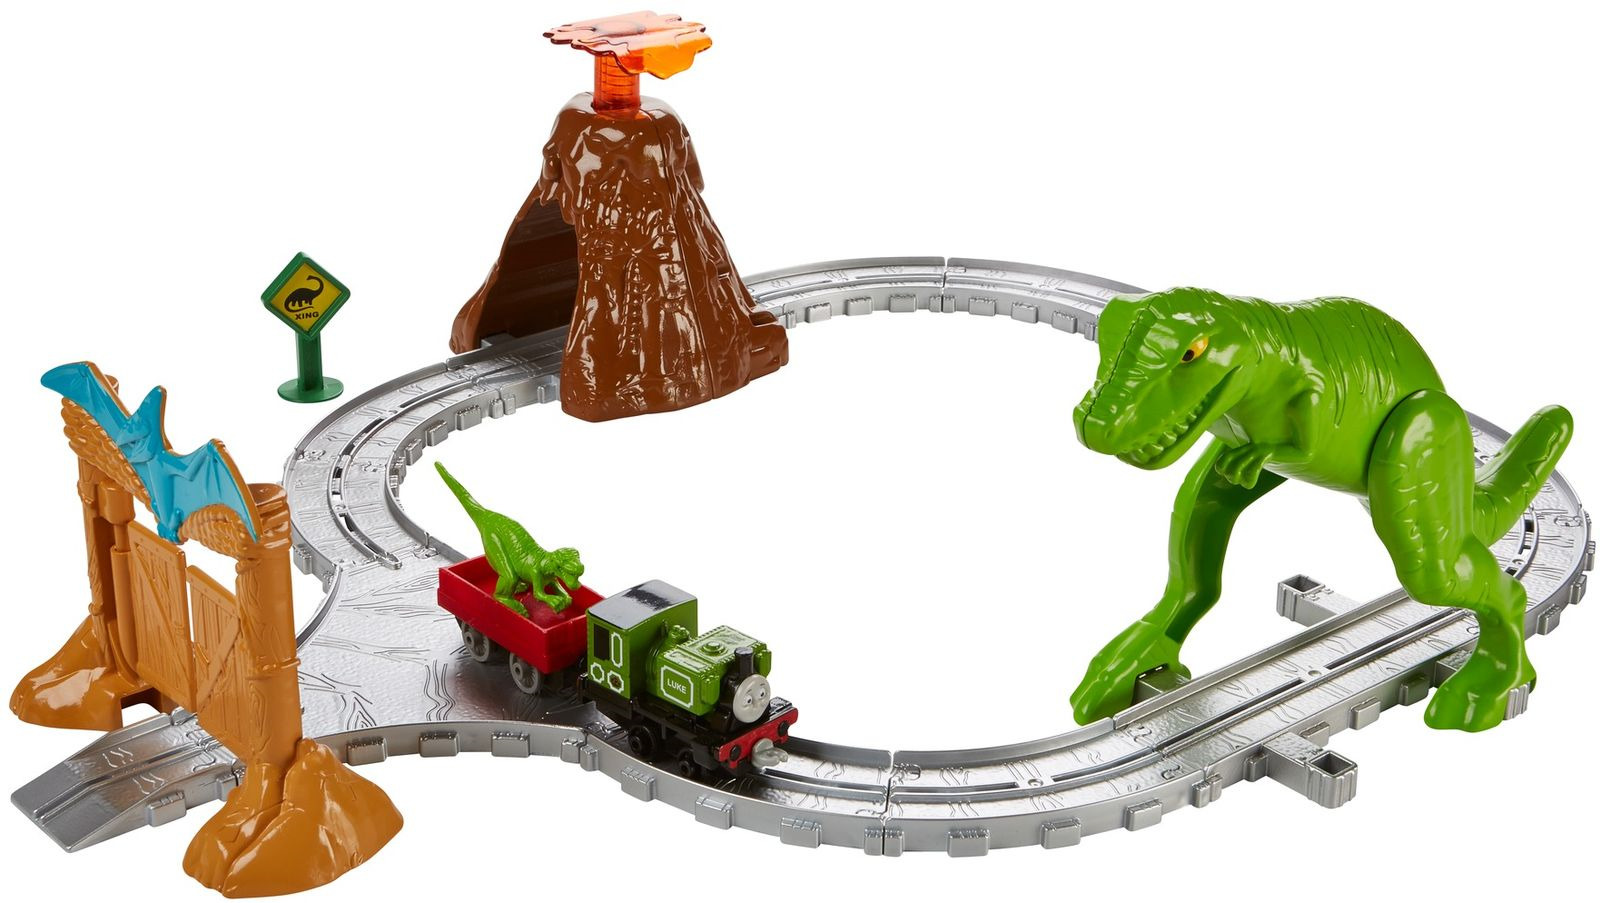 Thomas & Friends Железная дорога Парк динозавров